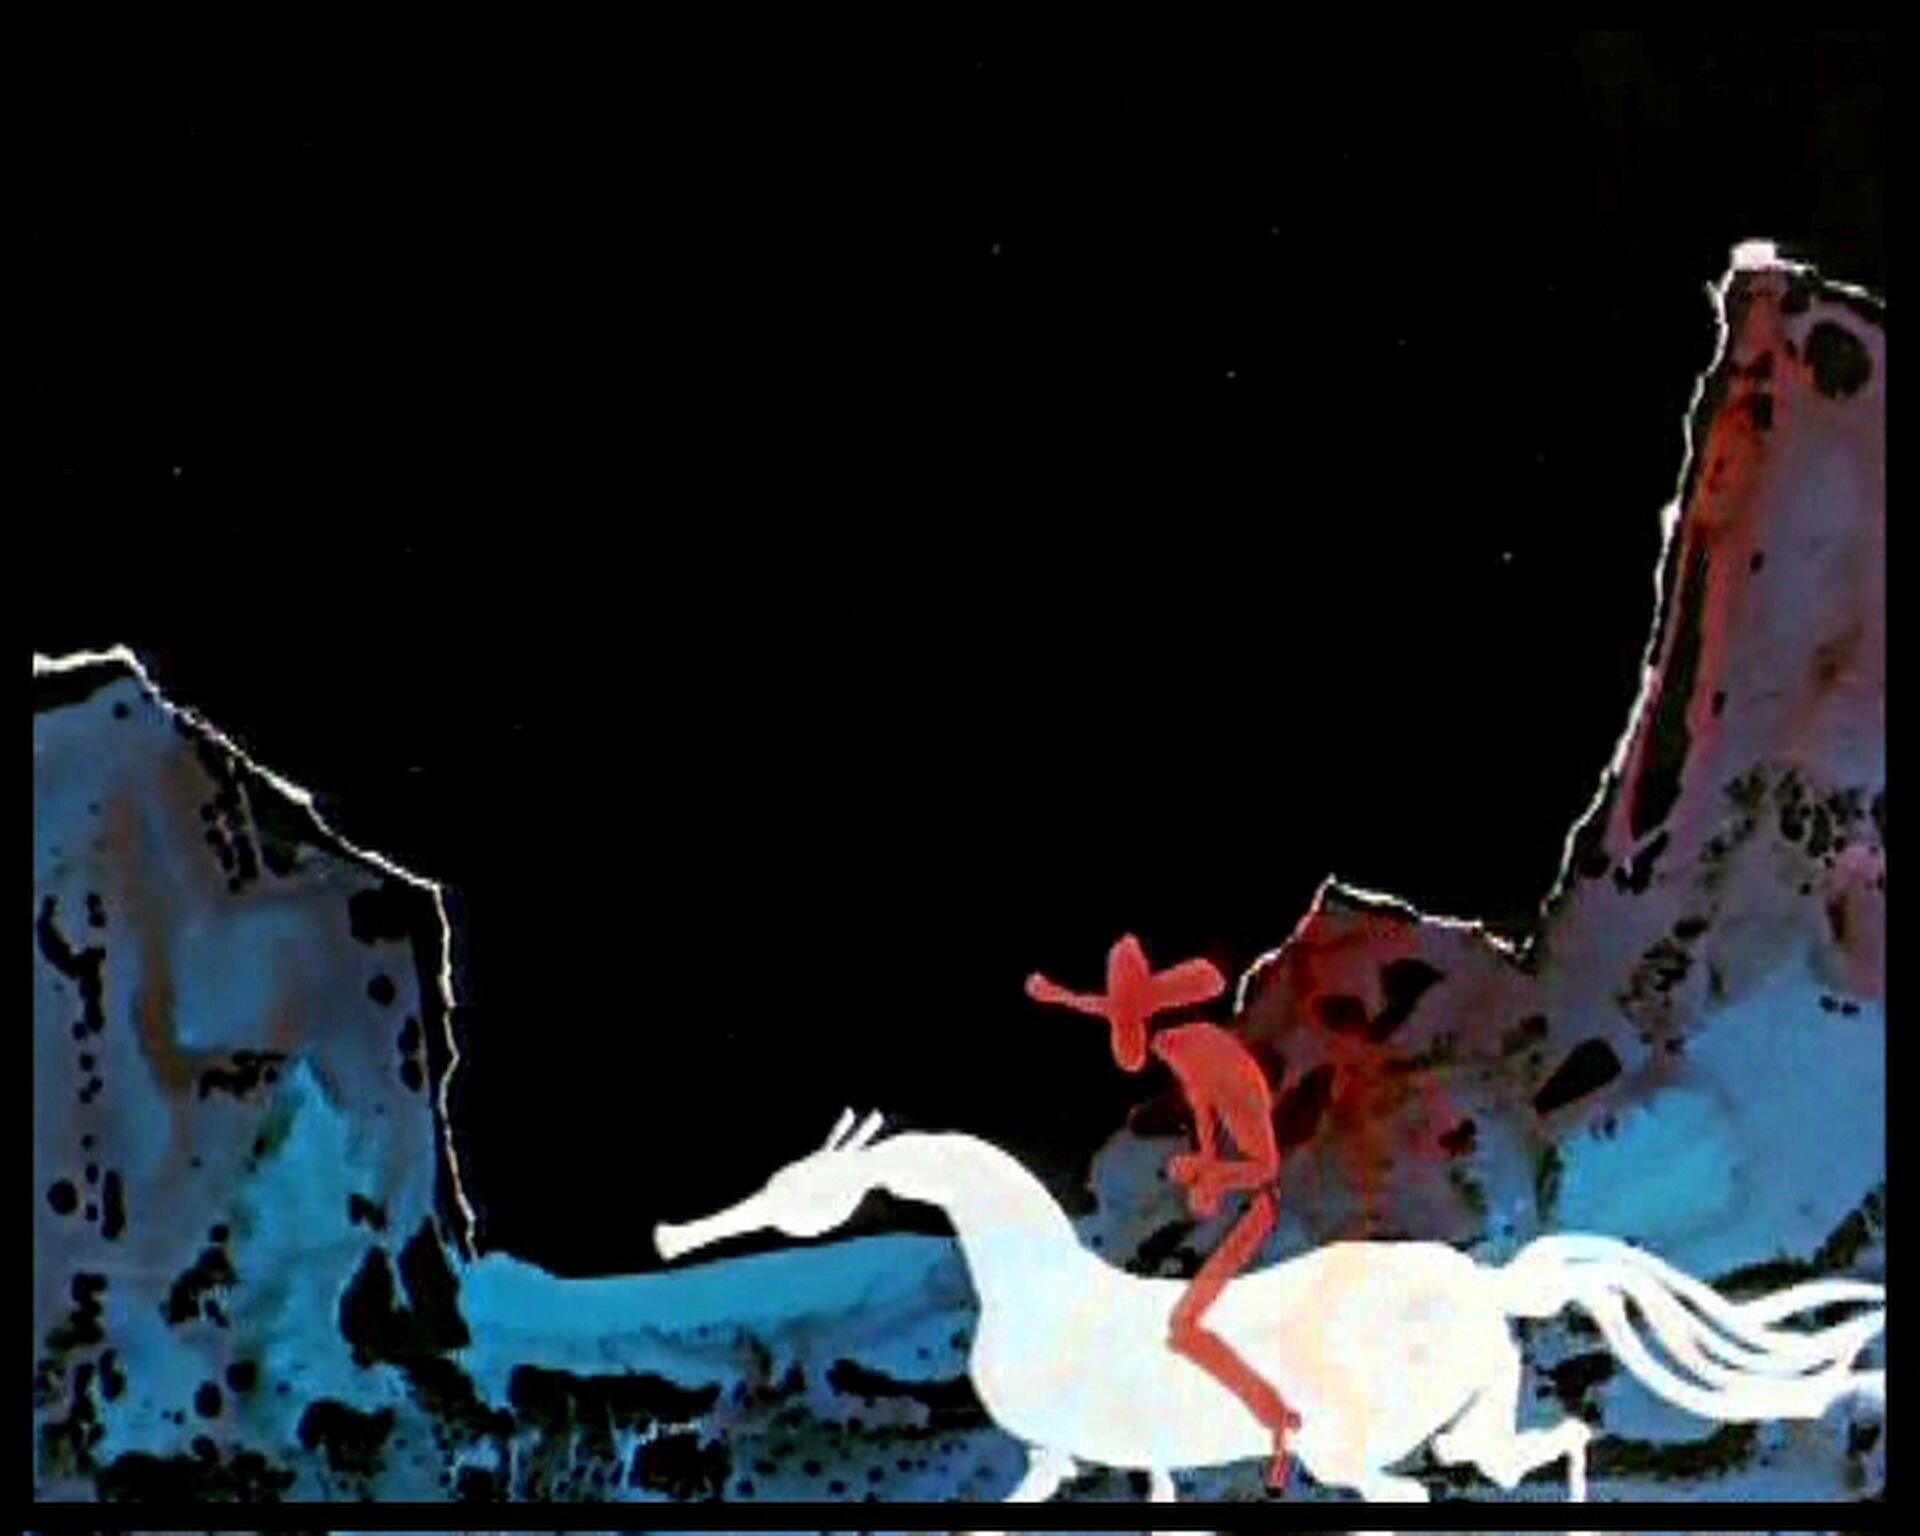 Ilustracja przedstawia fragment animacji Witolda Giersza "Mały Western". Ukazuje wycięte z papieru elementy. Na białym koniu siedzi czerwony mężczyzna w kapeluszu z dużym rondem. W tle znajduje się czerwono-niebieska wydzieranka przedstawiająca góry.